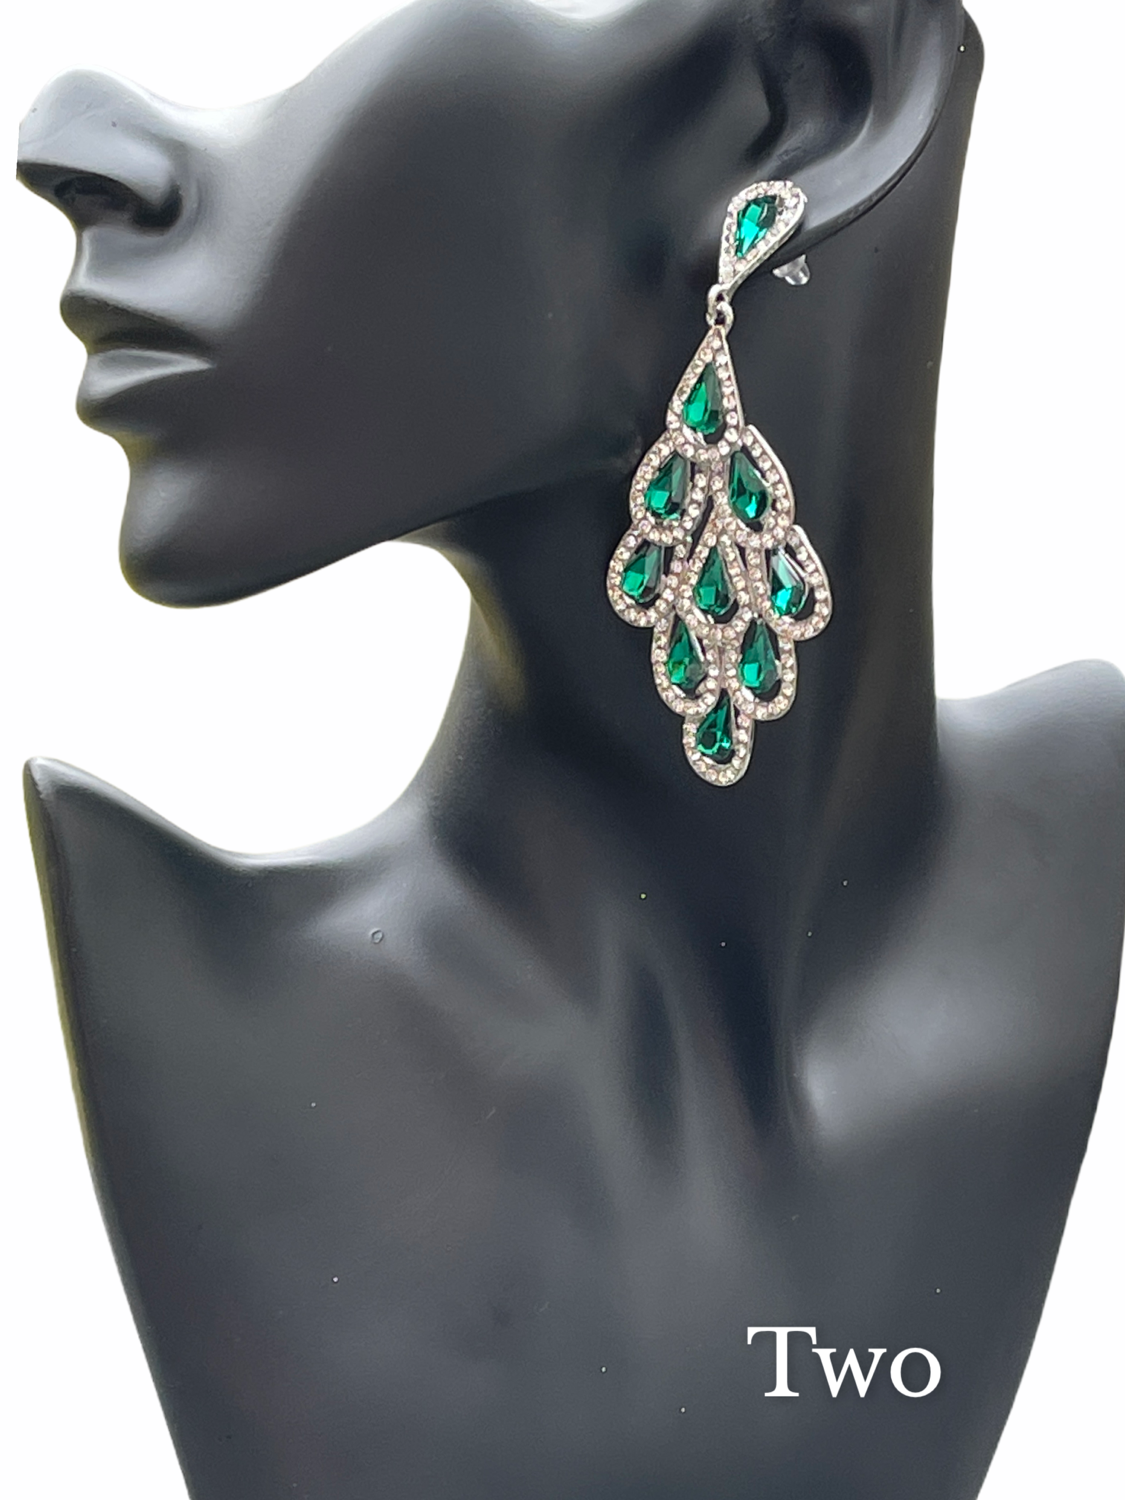 Crystal Diamante Rhinestone Sparkle Water Drop Elegant Statement Earrings